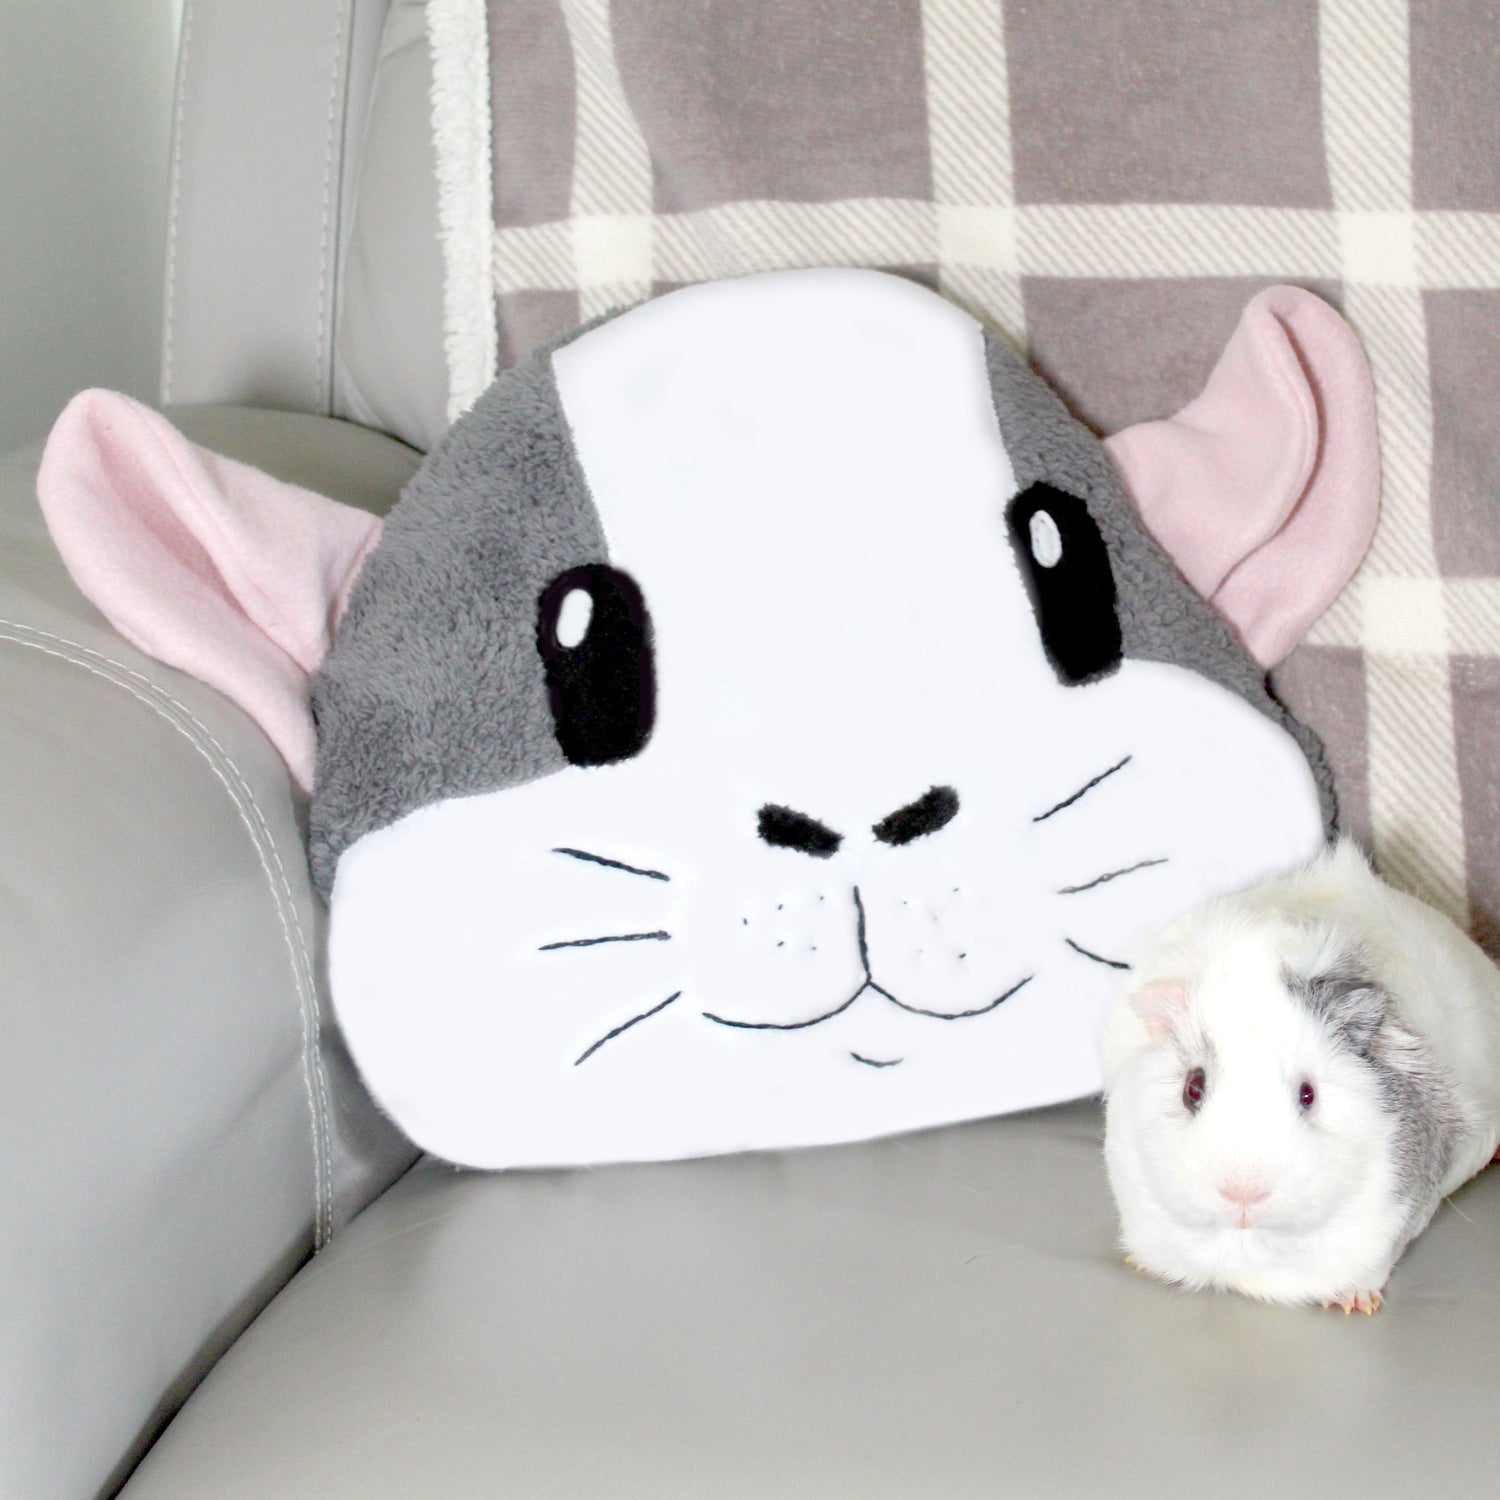 Big Grey & White Guinea Pig Face Pillow